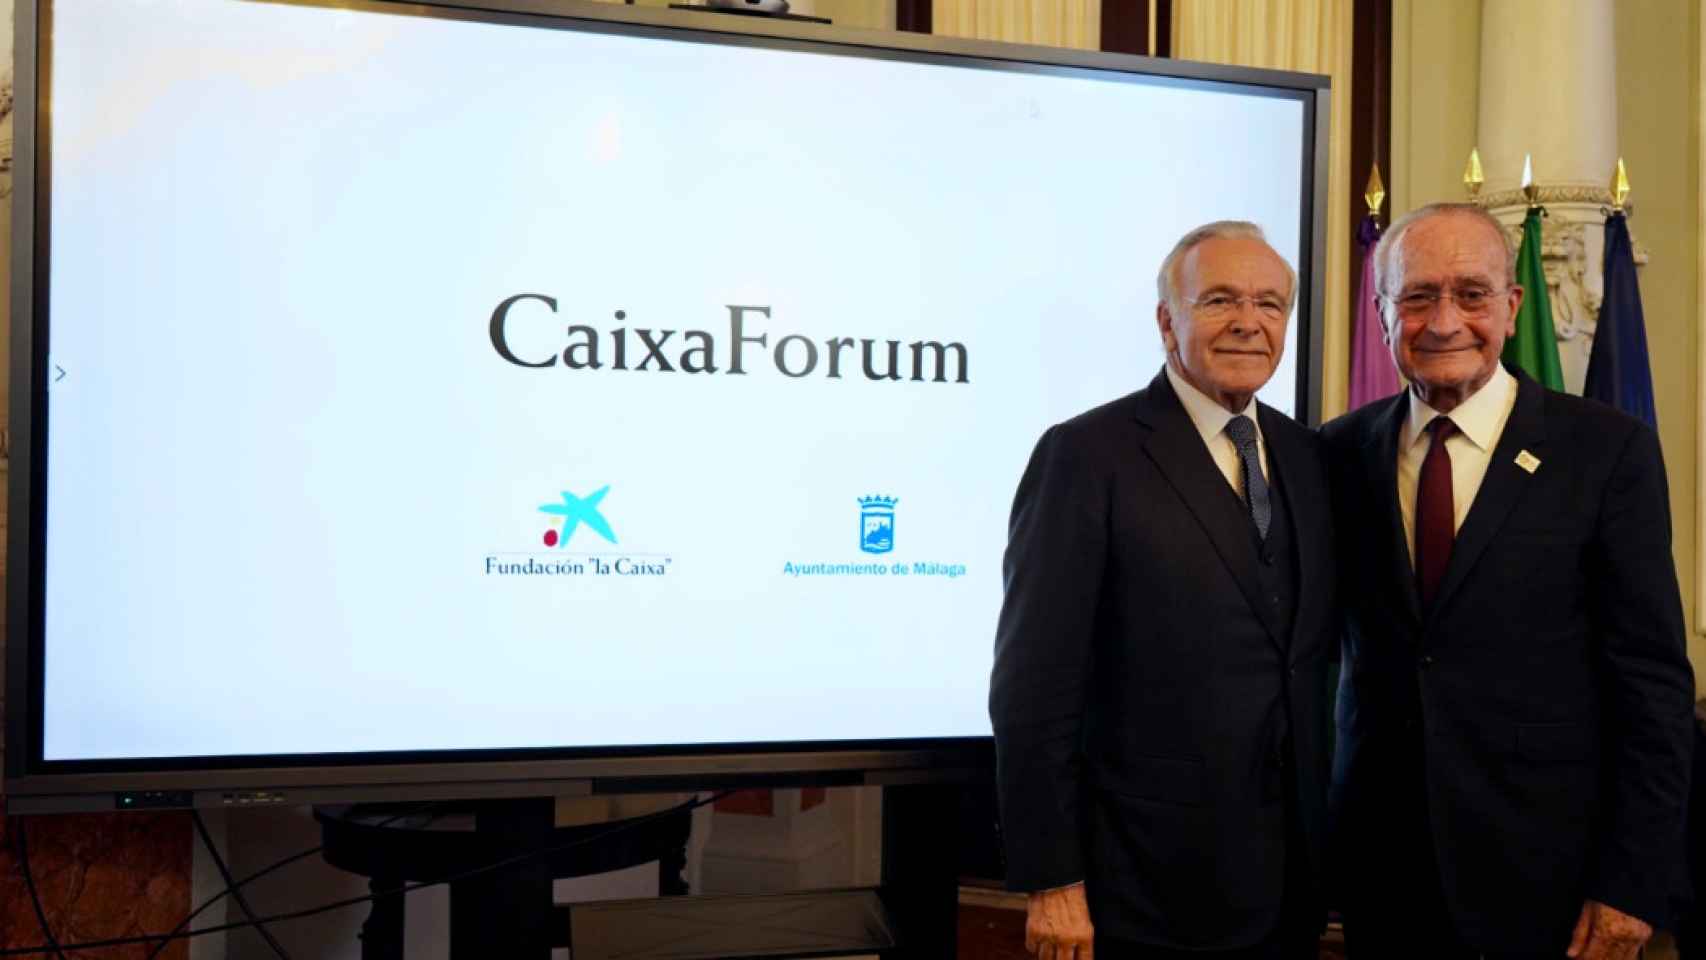 El presidente de la Fundación 'la Caixa', Isidro Fainé, y del alcalde de Málaga, Francisco de la Torre.